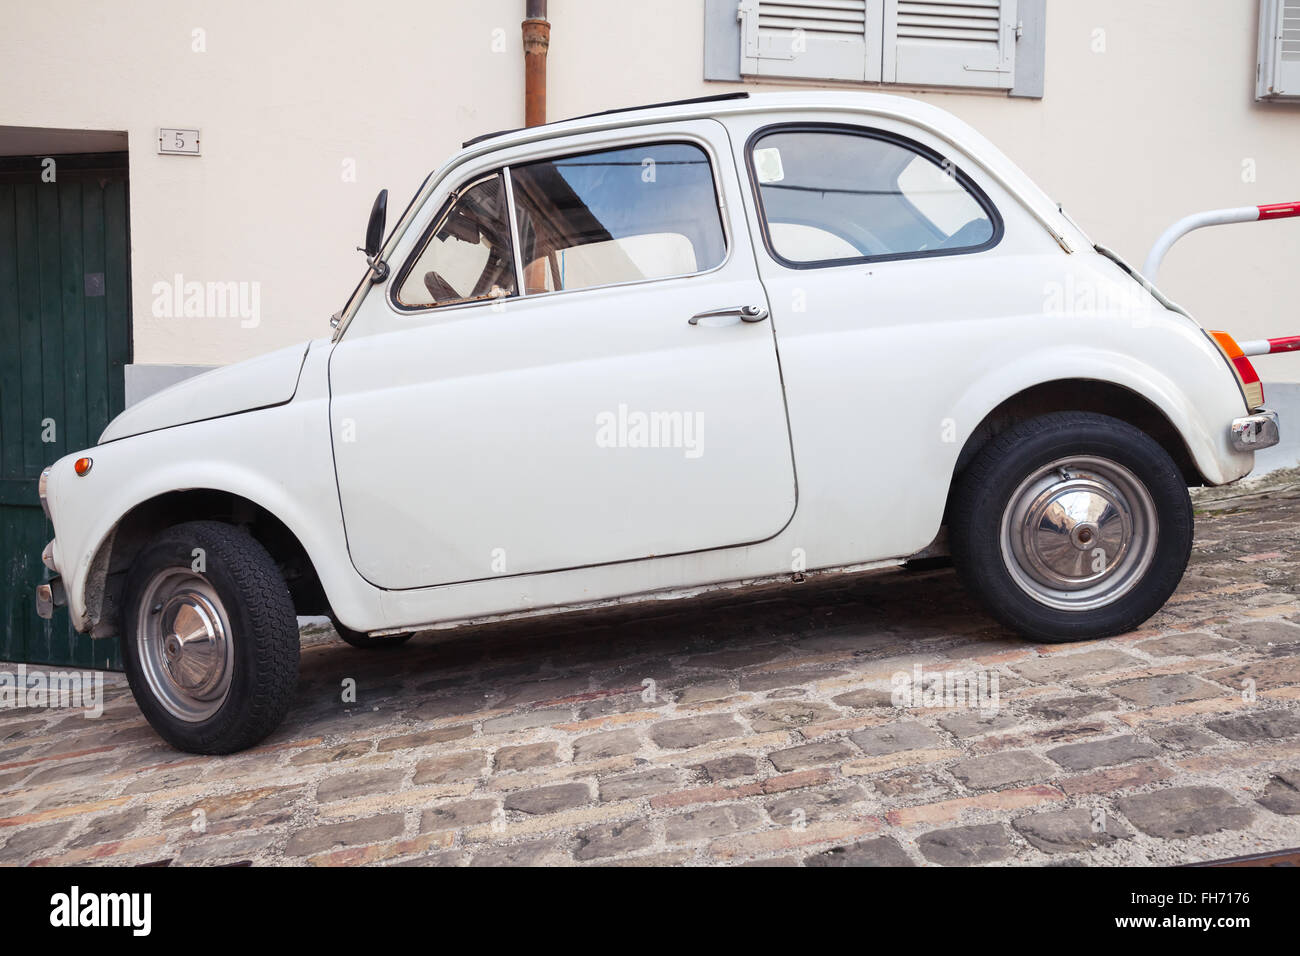 Fermo, Italia - 11 Febbraio 2016: vecchia FIAT 500 bianco città L'auto sulla strada della città italiana, vista laterale Foto Stock